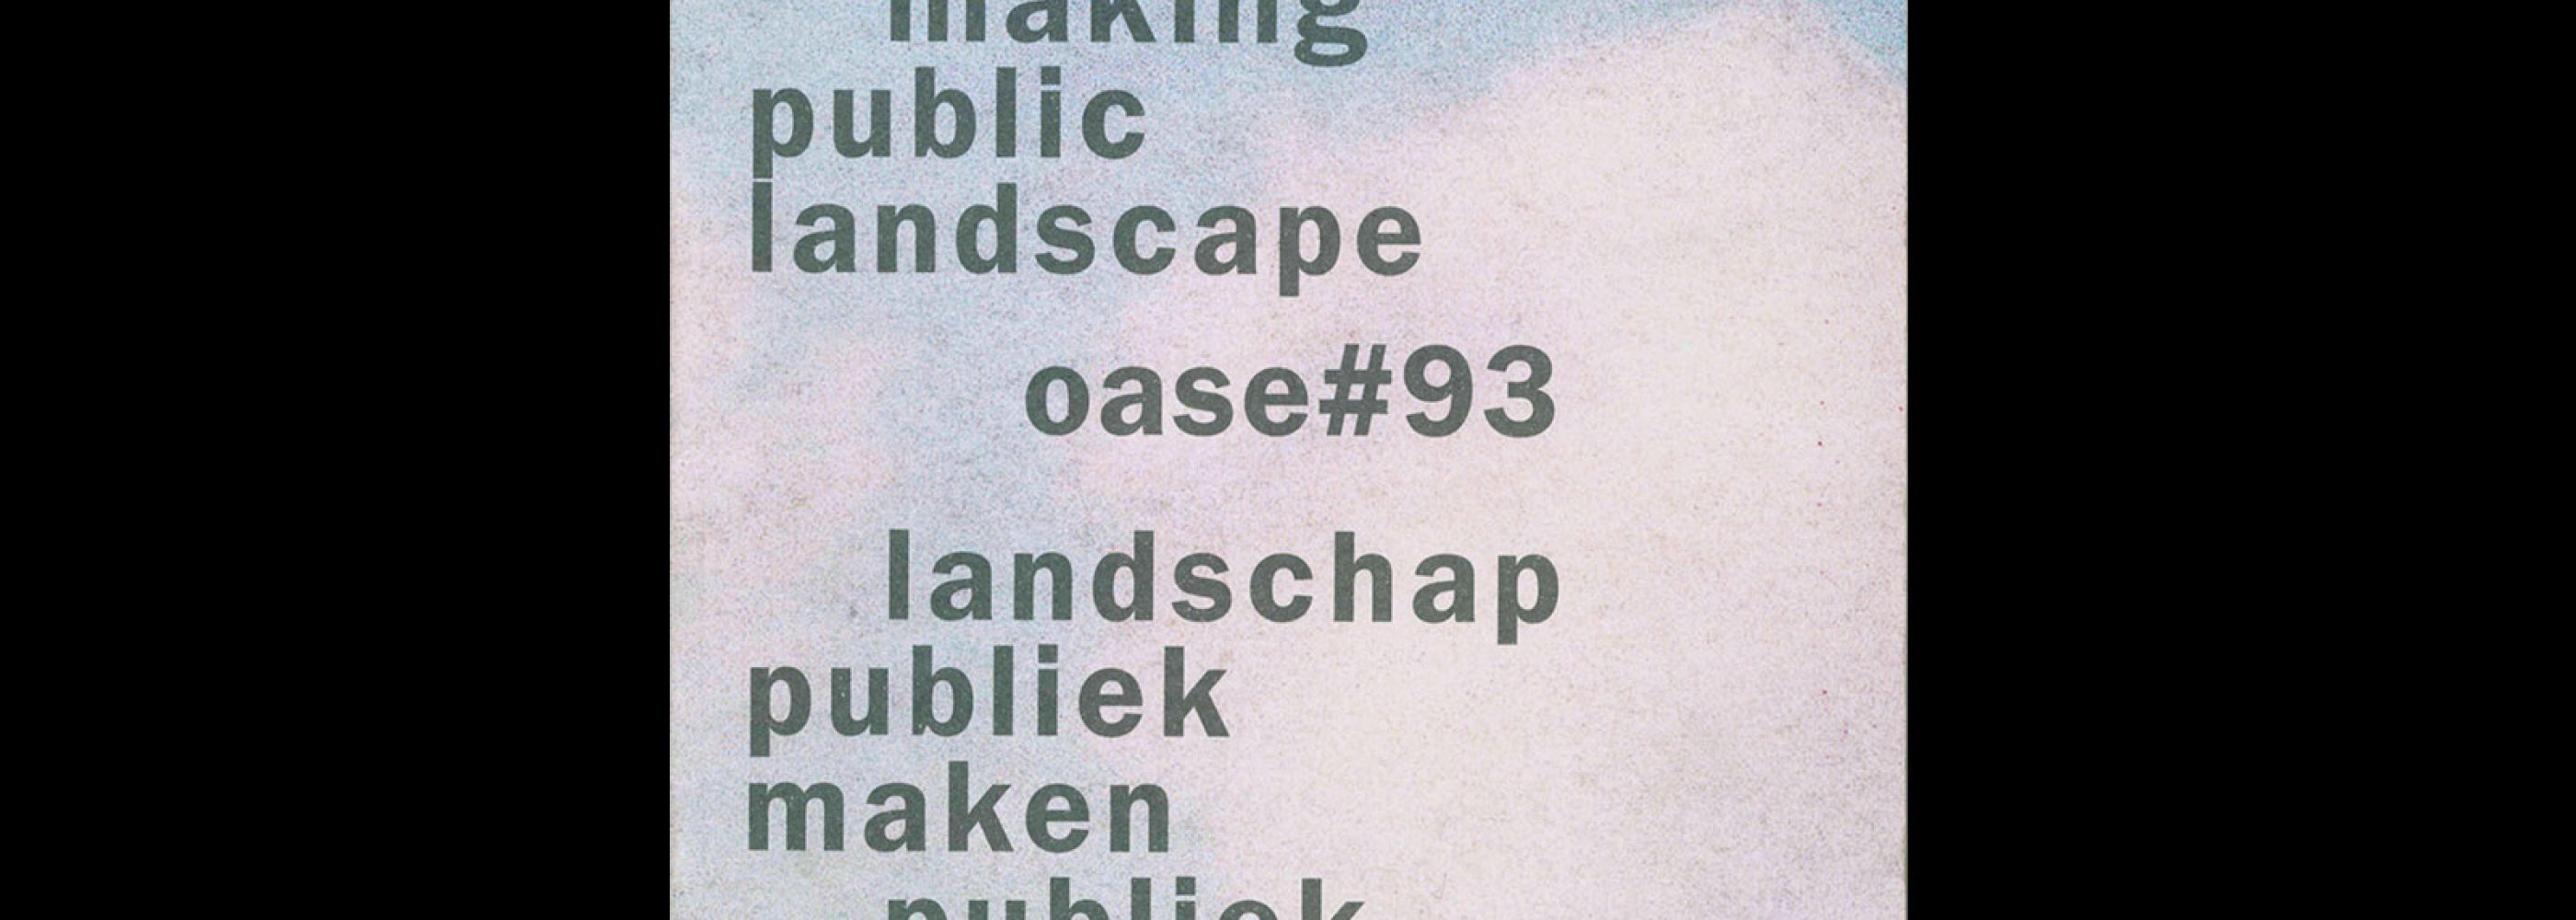 Oase 93, 2014, Making landscape public Making public landscape. Designed by Karel Martens and Aagjes Martens